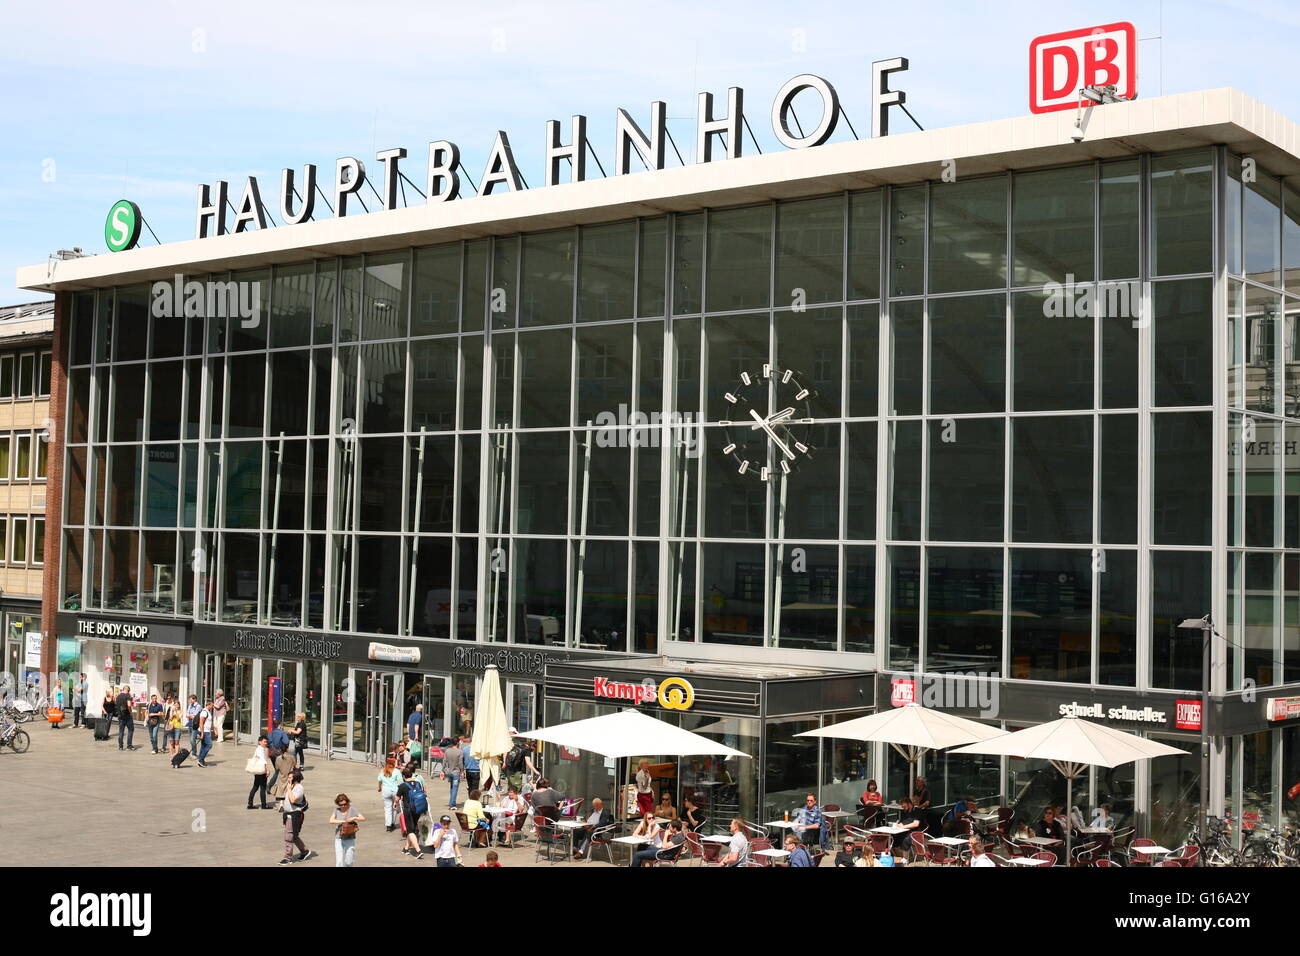 La entrada de la estación central de tren, Hauptbahnhof, en Colonia, Alemania Foto de stock